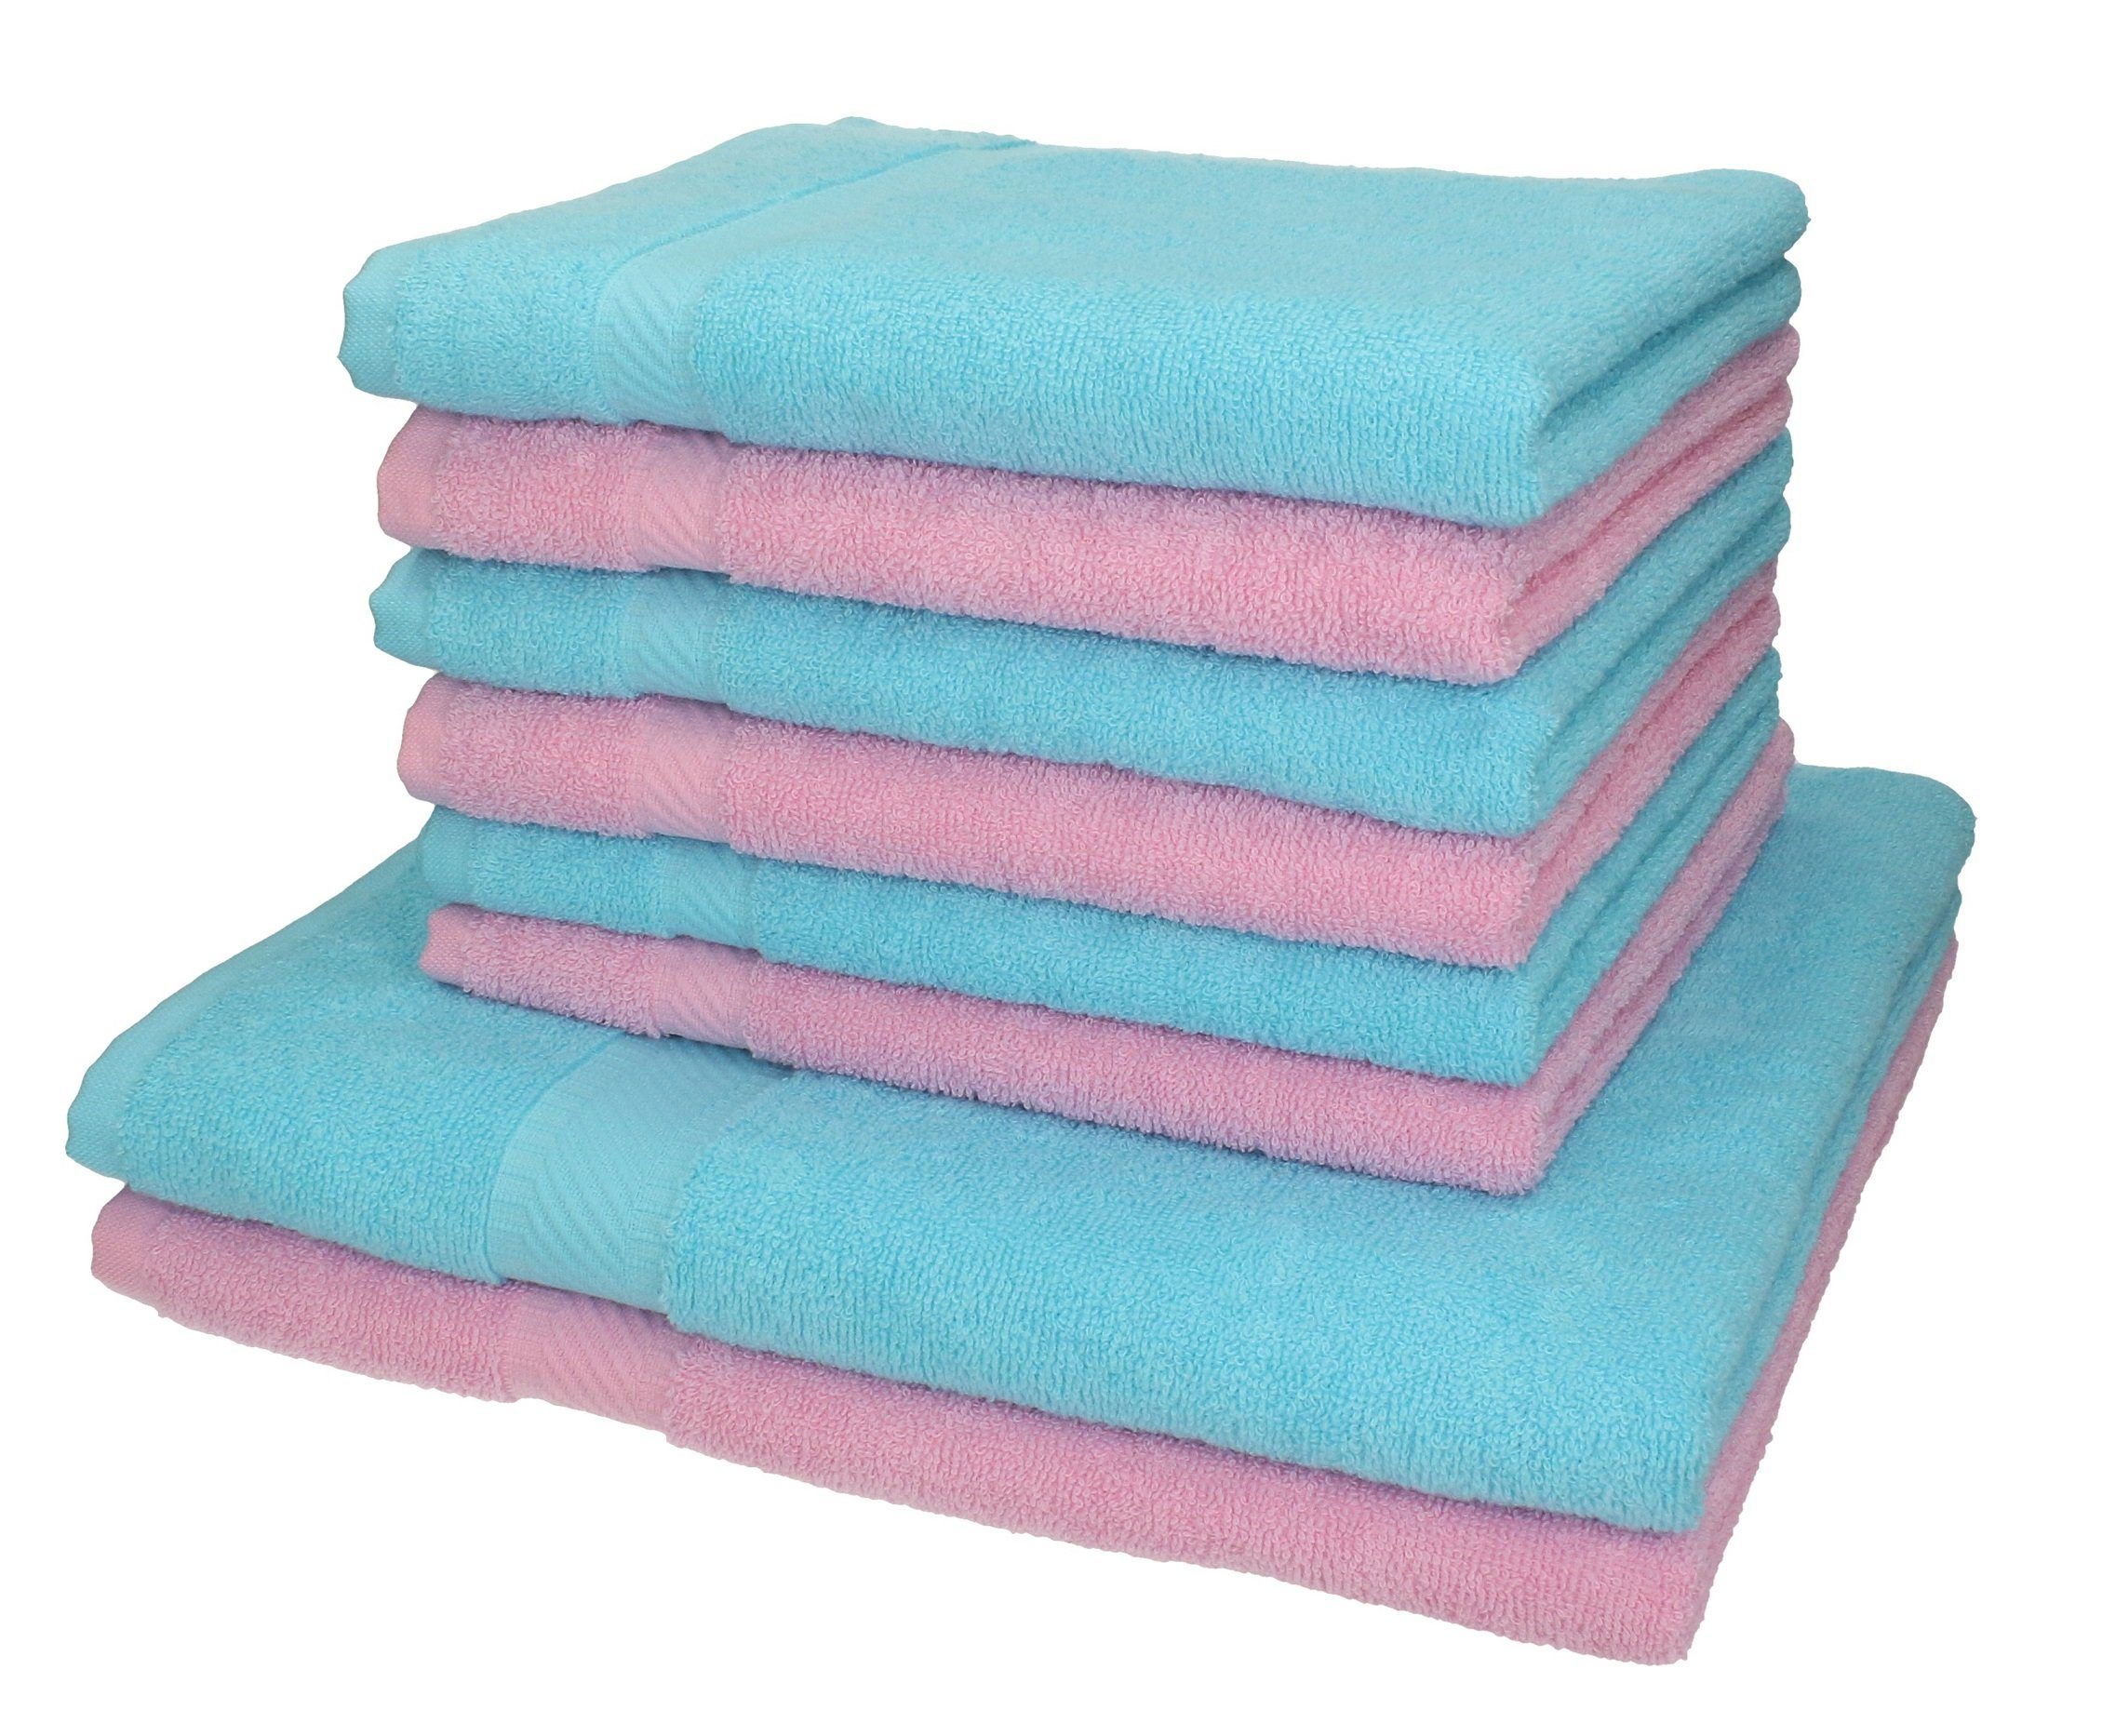 Betz Handtuch Set 8-TLG. Handtuch-Set Palermo 100% Baumwolle 2 Duschtücher 6 Handtücher Farbe rosé und türkis, 100% Baumwolle | Handtuch-Sets